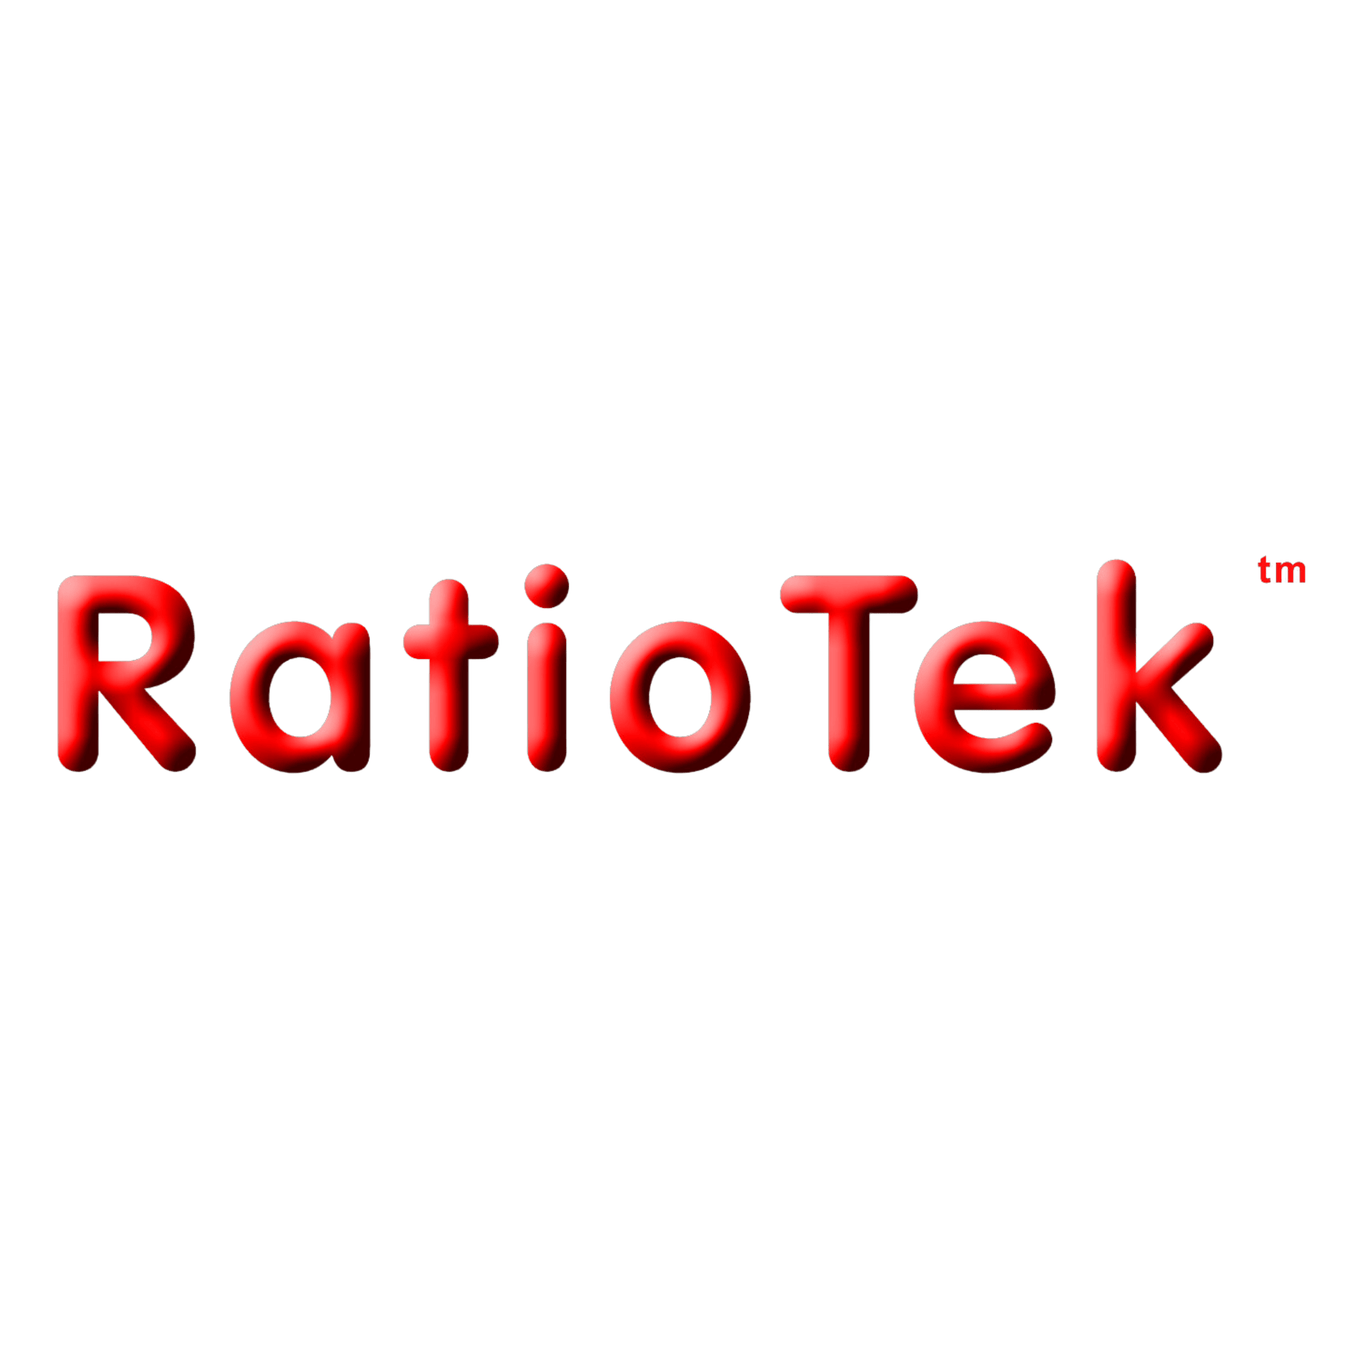 RatioTek - OCDiesel